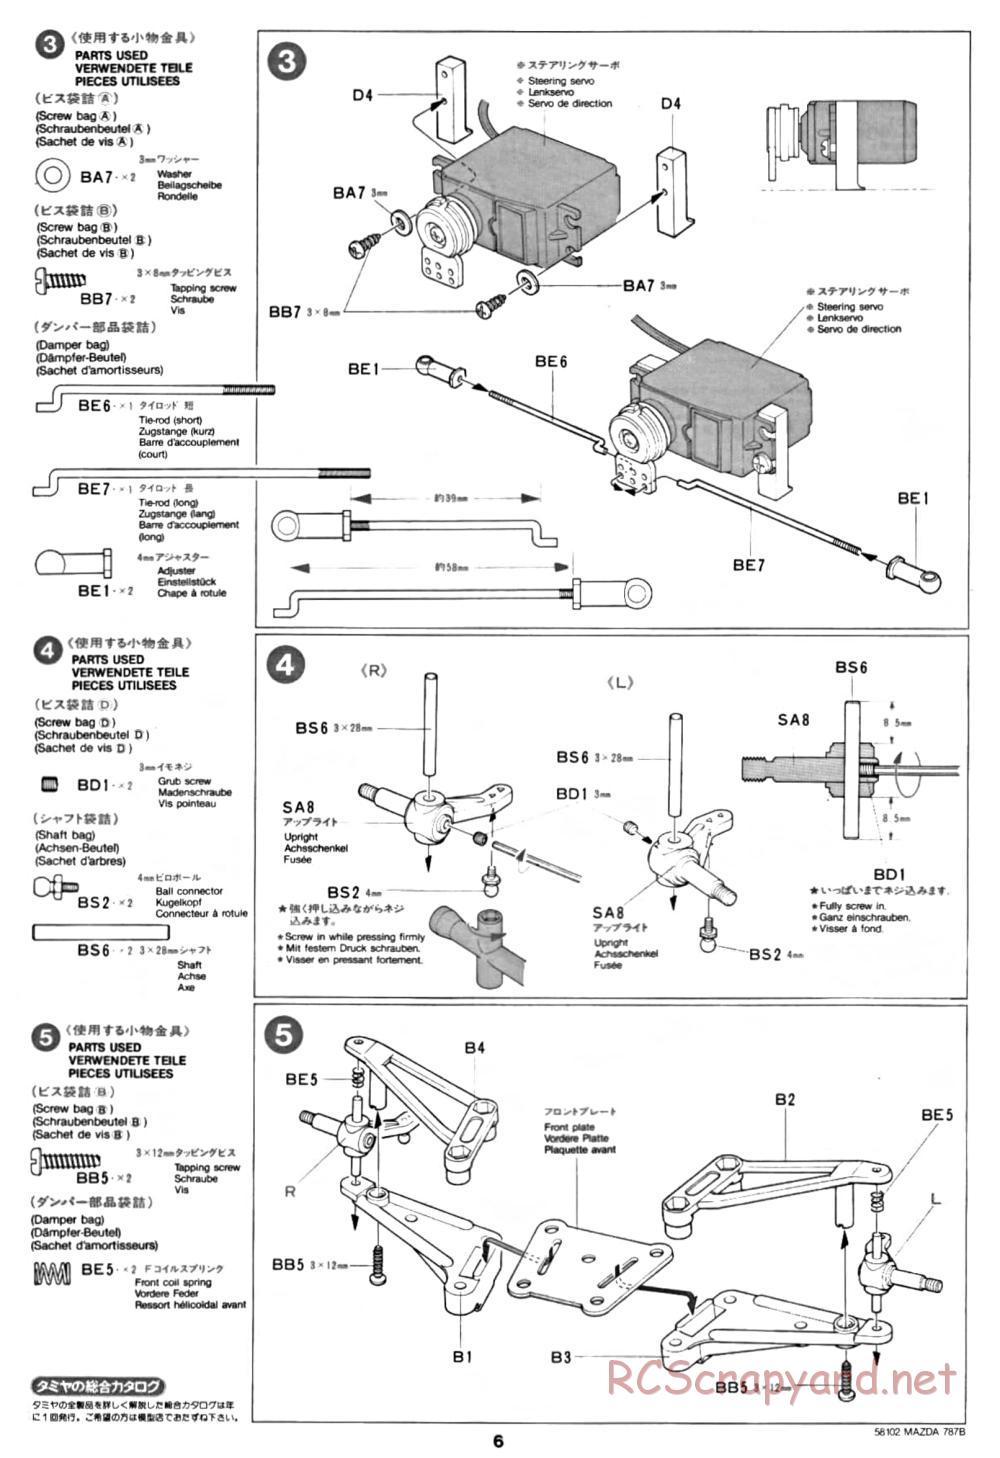 Tamiya - Mazda 787B - Group-C Chassis - Manual - Page 6